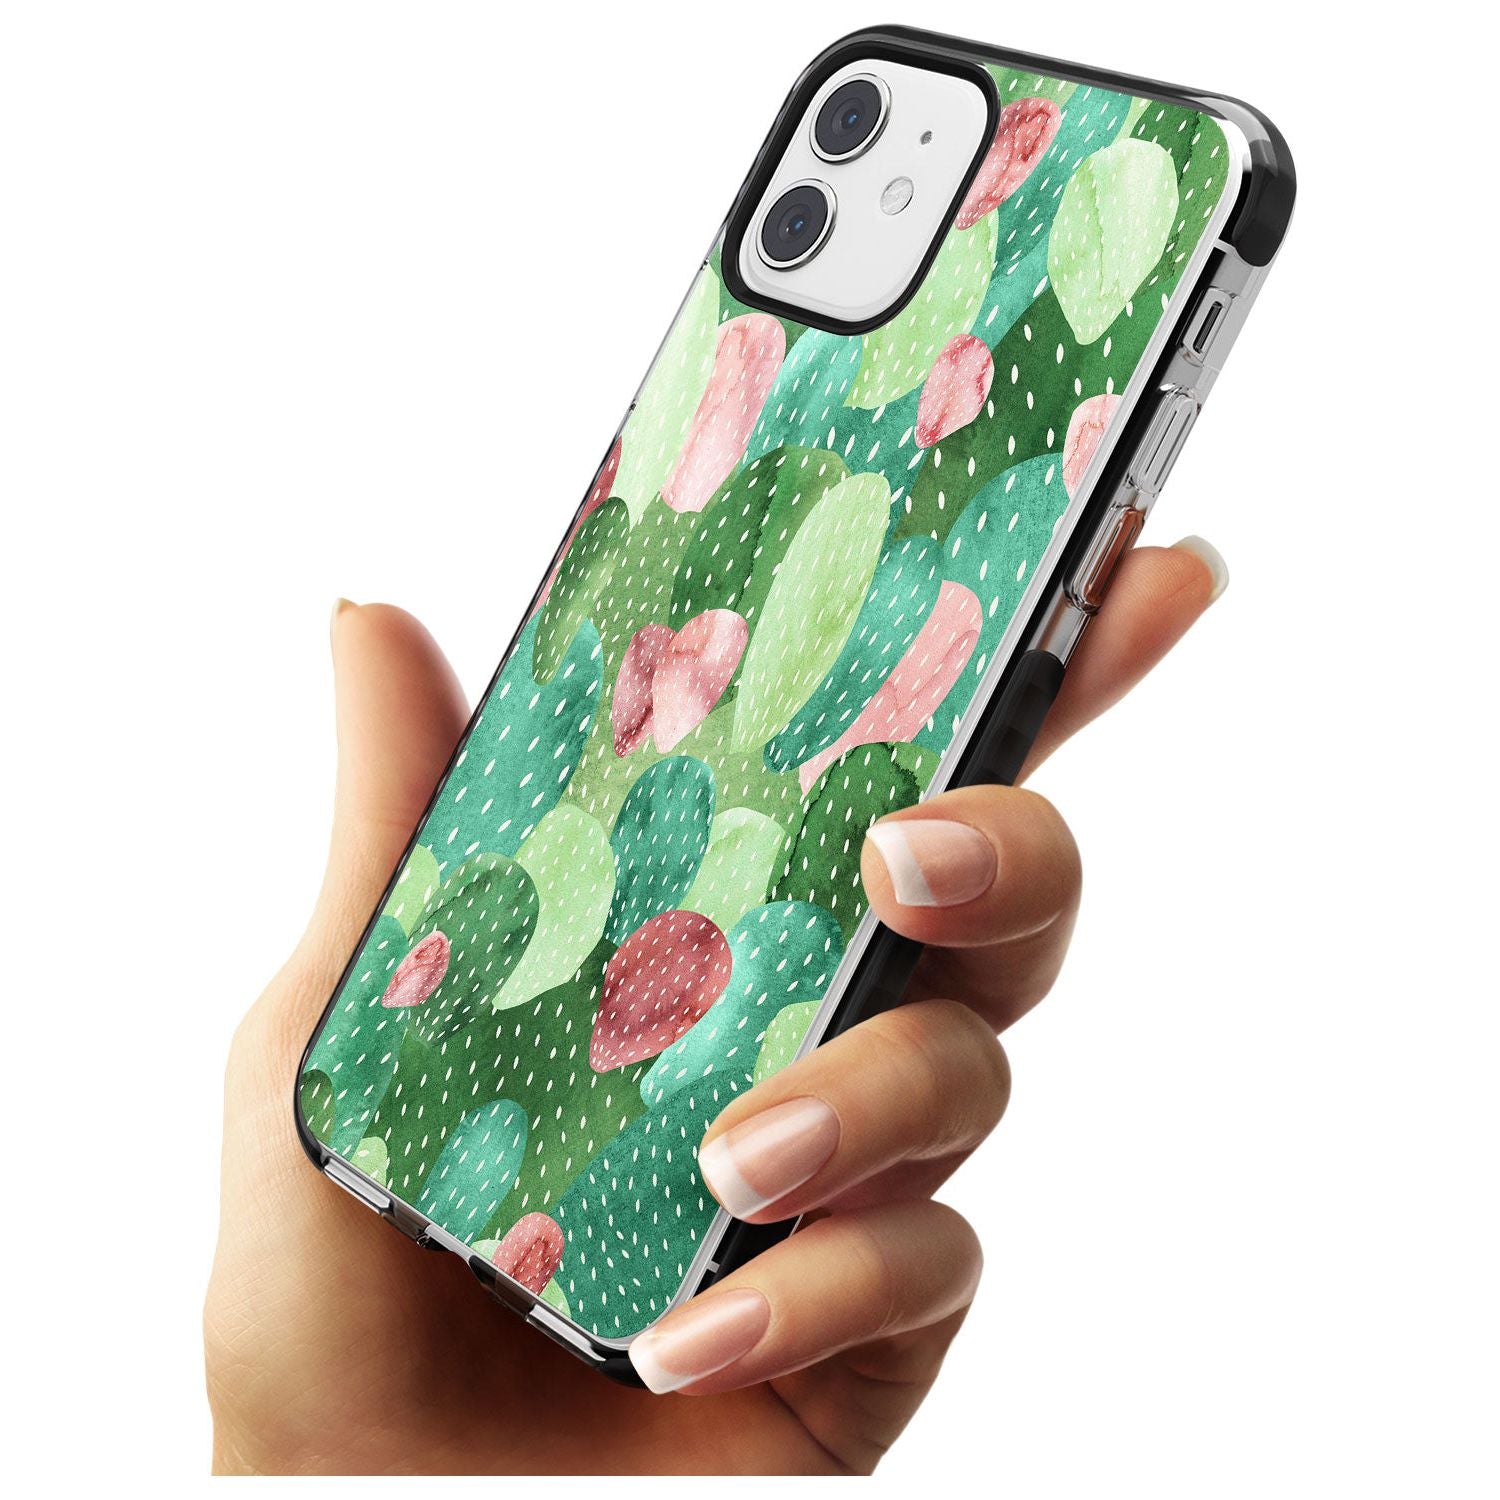 Colourful Cactus Mix Design Black Impact Phone Case for iPhone 11